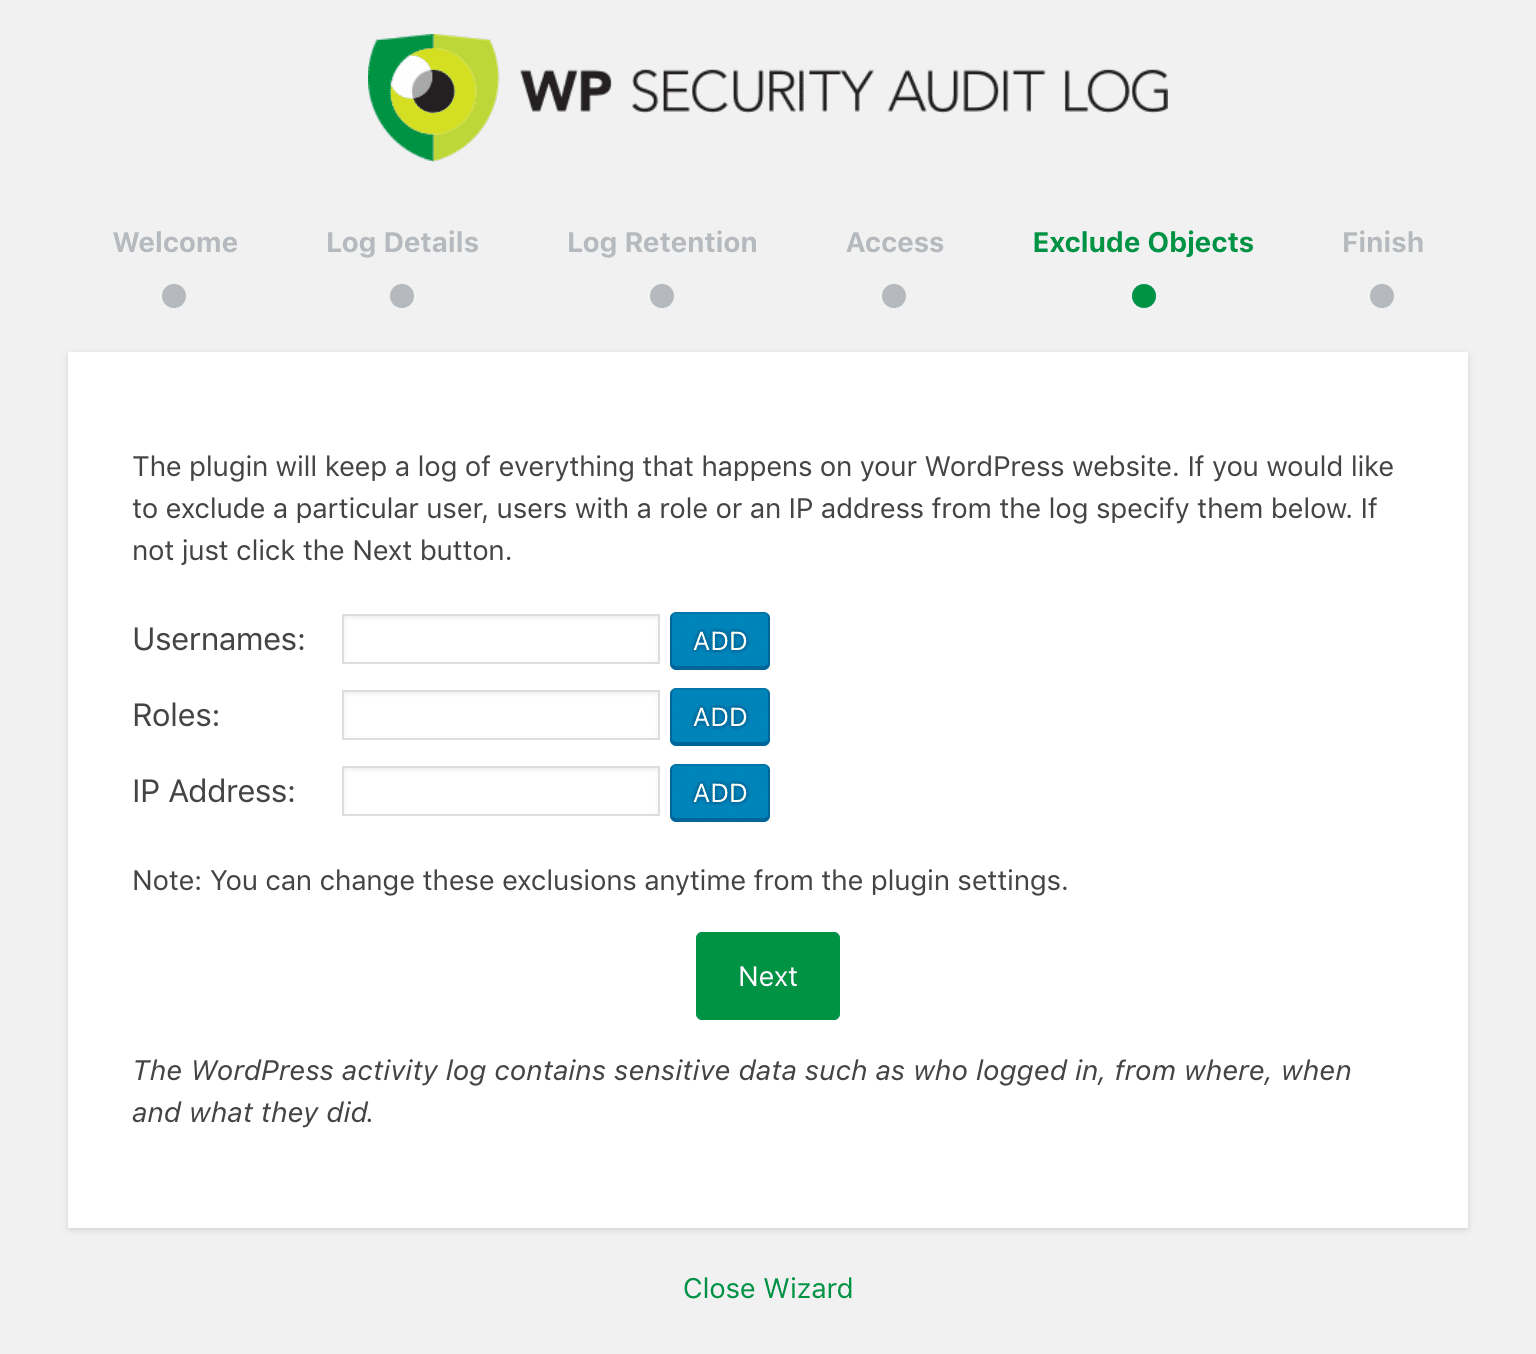 Esclusione di oggetti in WP Security Audit Log